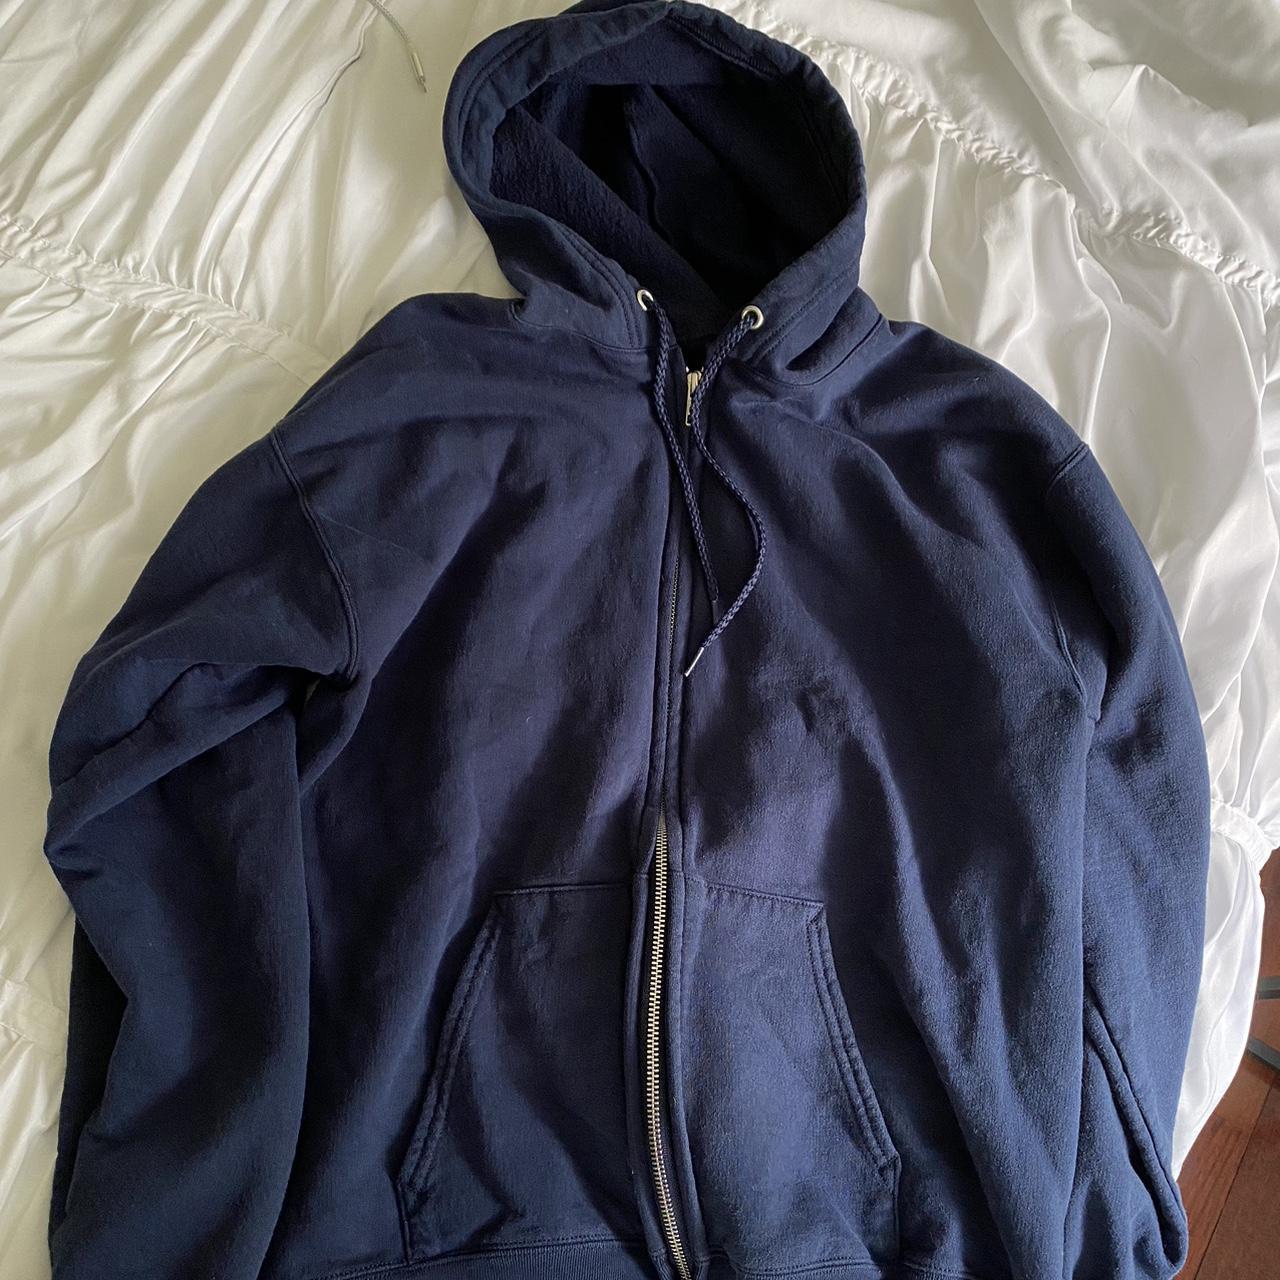 Blue zip up hoodie! So comfy. Never worn. Open to... - Depop